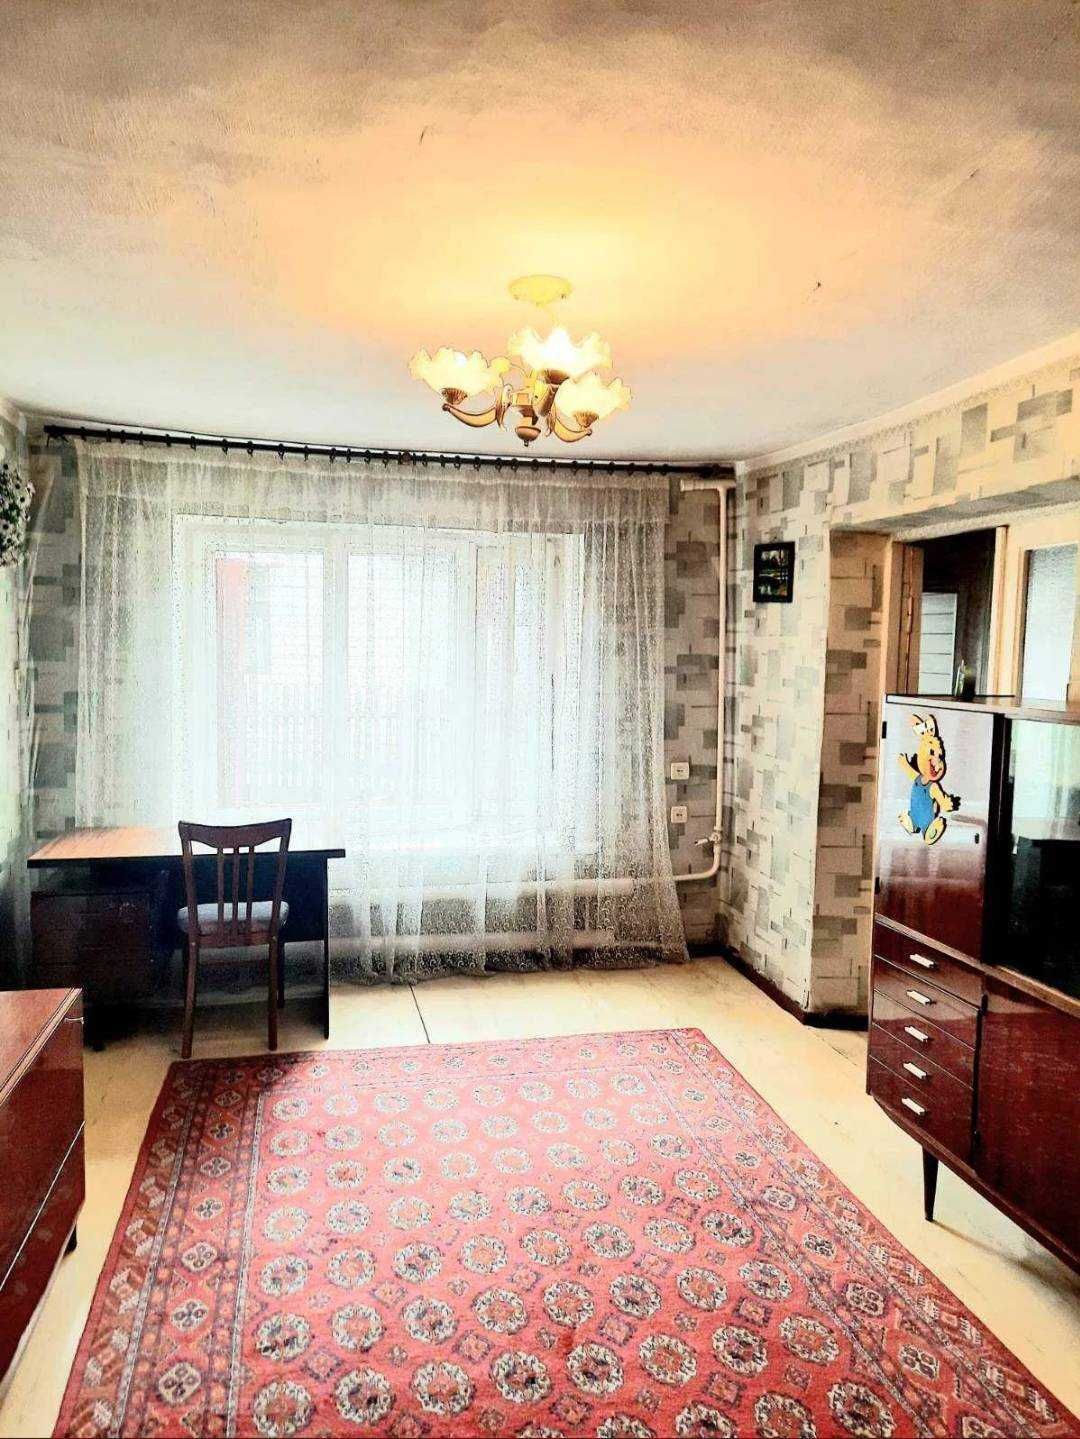 3 комнатная квартира на земле, на Разумовской, 283722